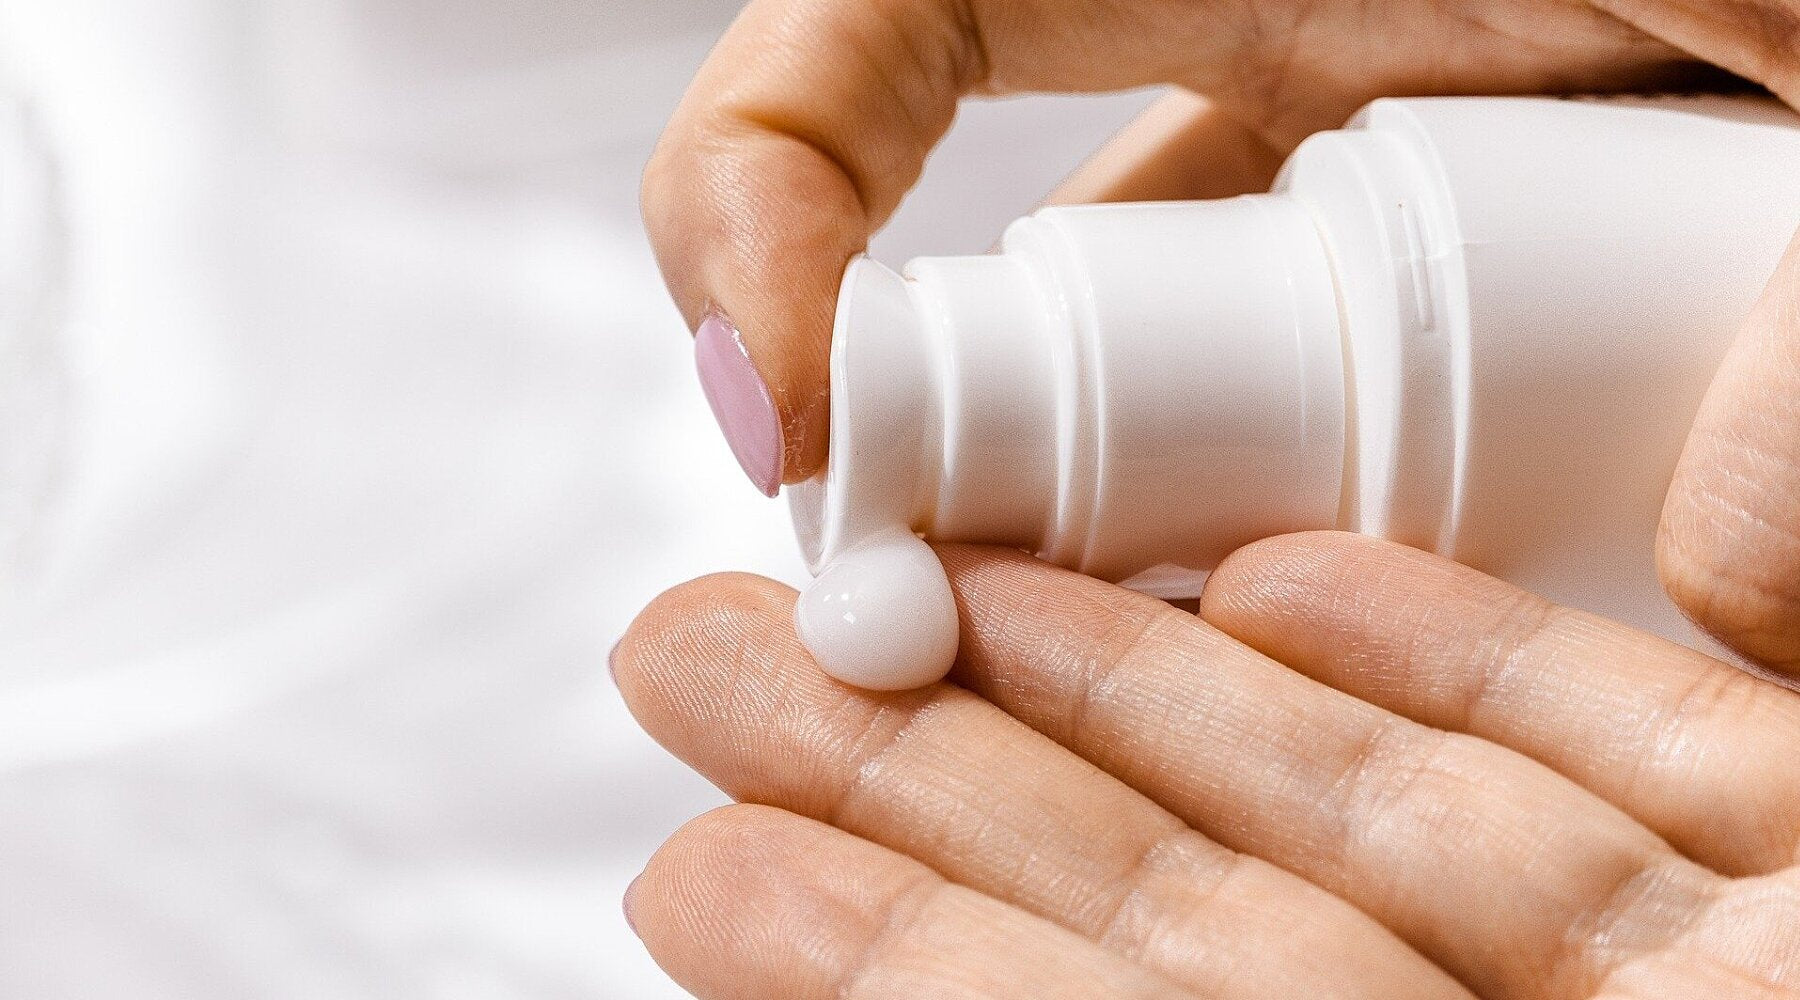 A hand applies a pump of moisturizer